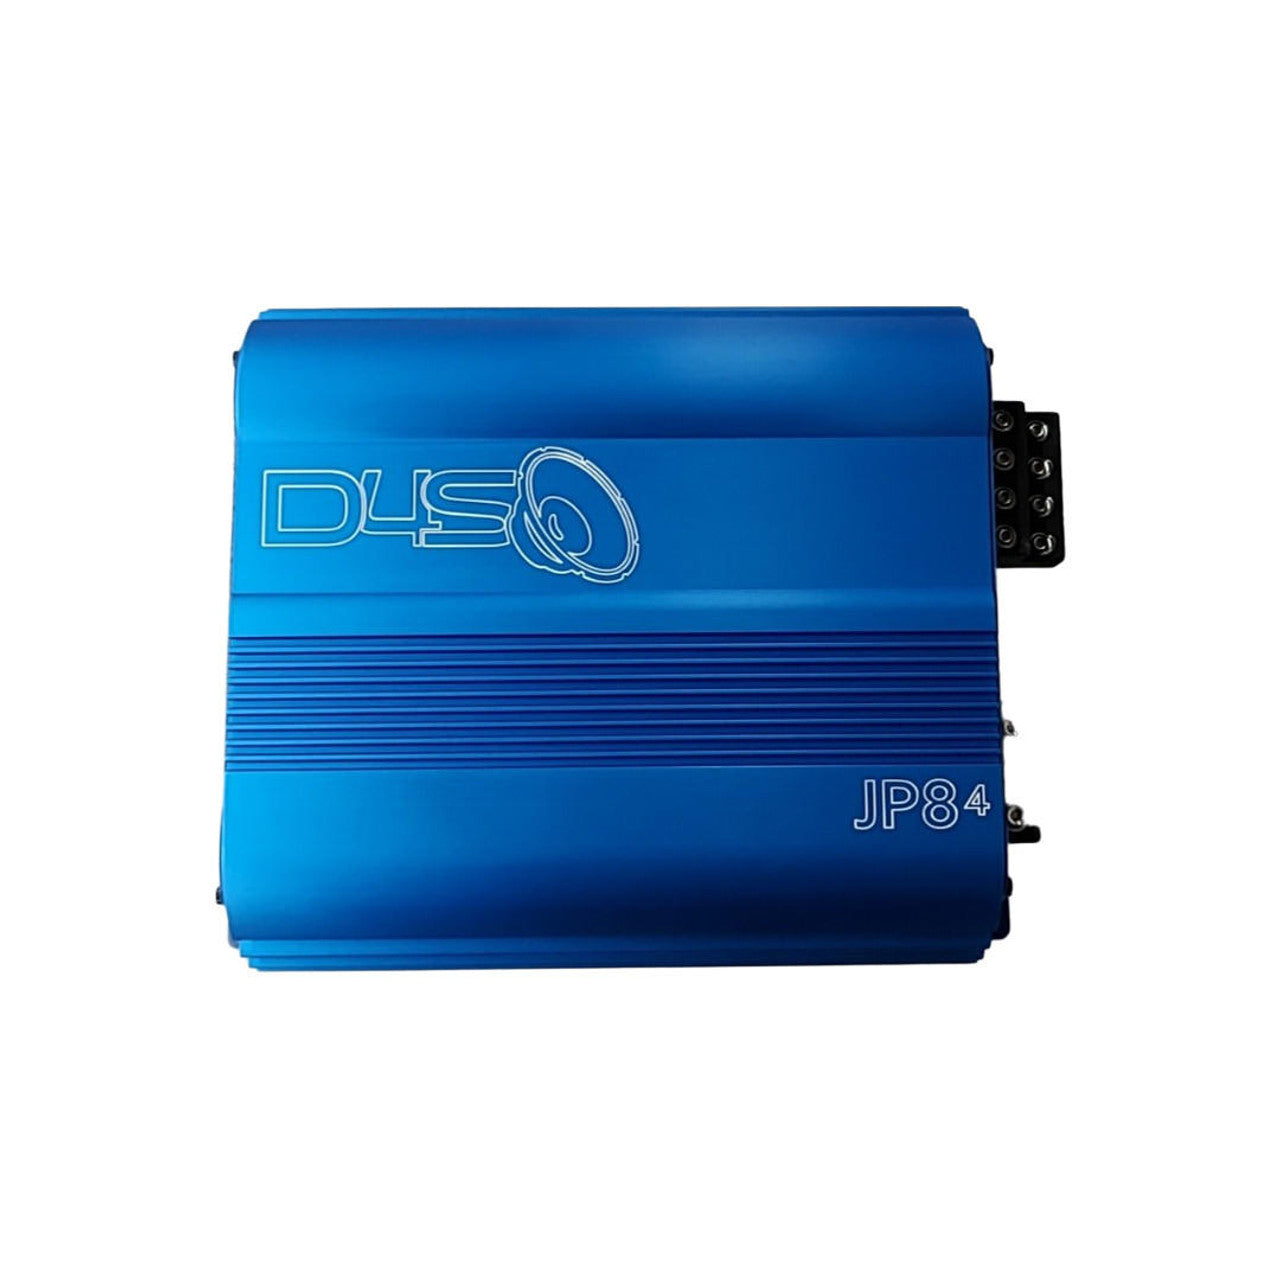 Down4Sound JP84 BLUE 4-Channel Car Amplifier 400 Watts